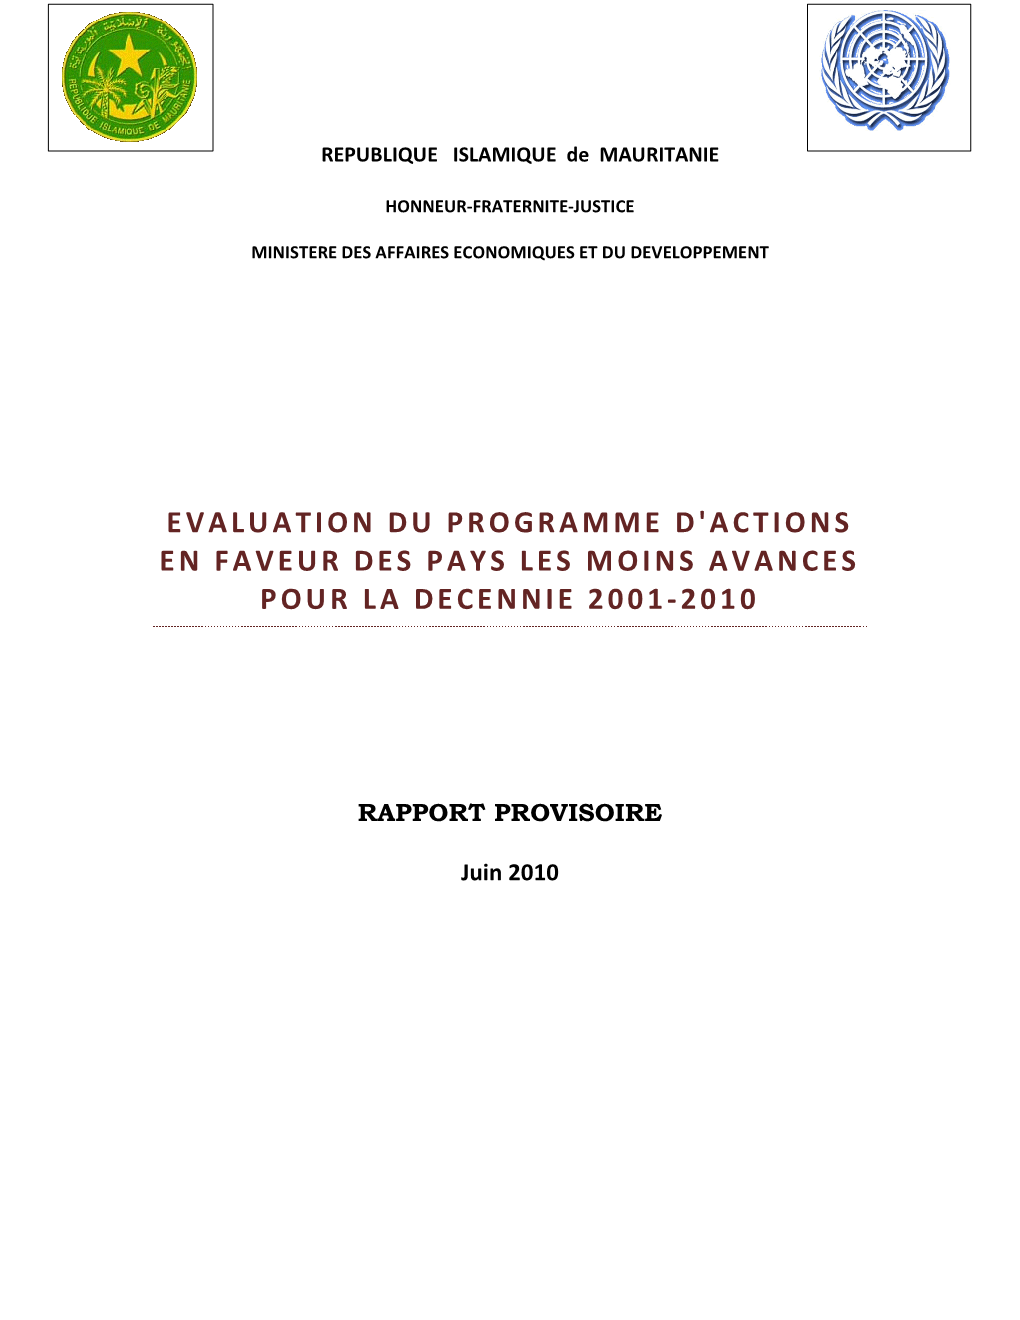 Evaluation Du Programme D'actions En Faveur Des Pays Les Moins Avances Pour La Decennie 2001-2010